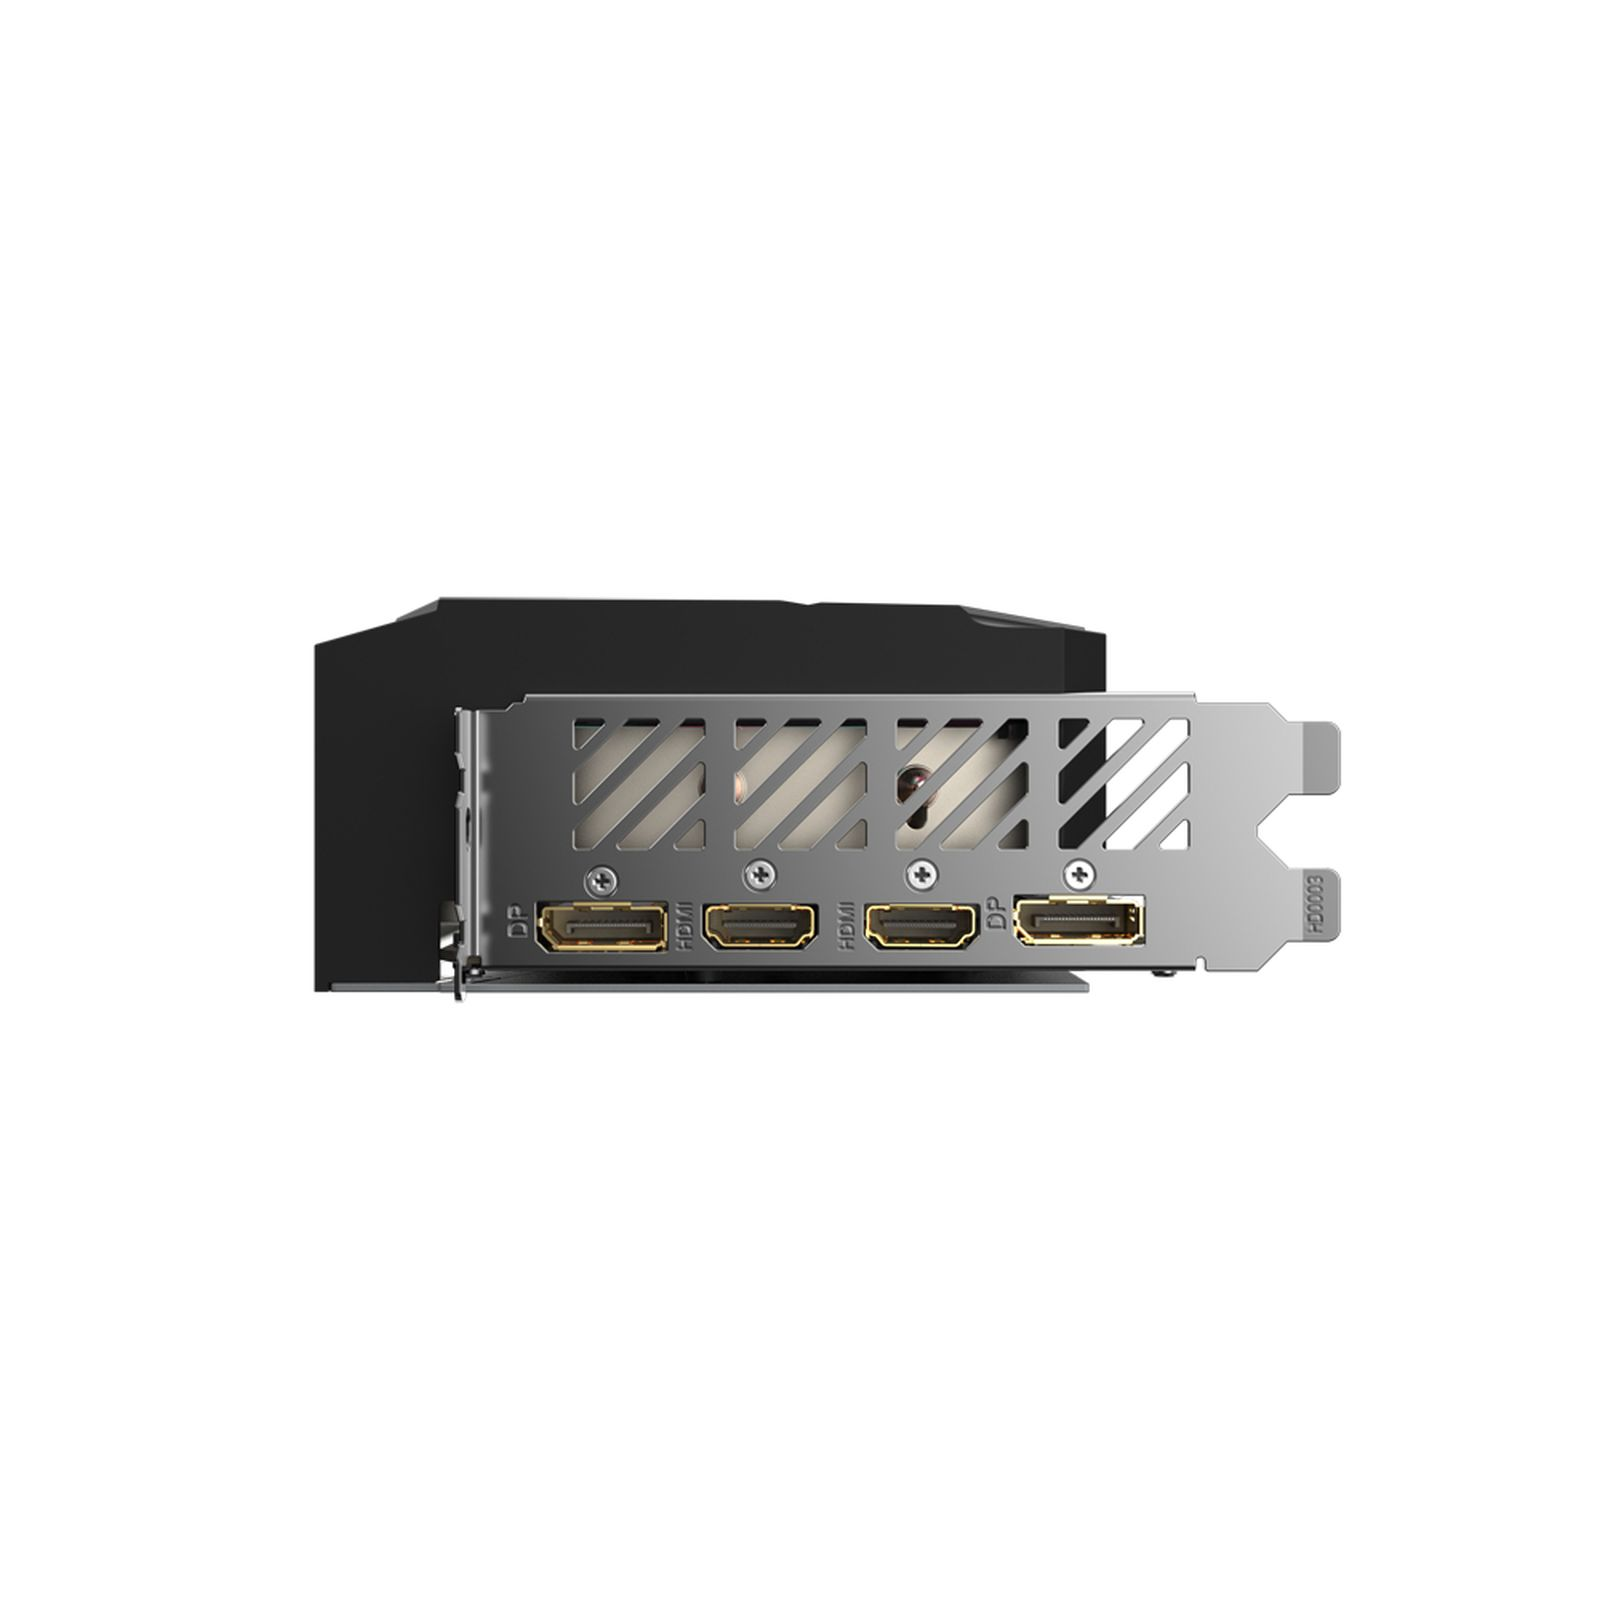 GeForce RTX (NVIDIA, GIGABYTE Grafikkarte) 8G 4060 ELITE